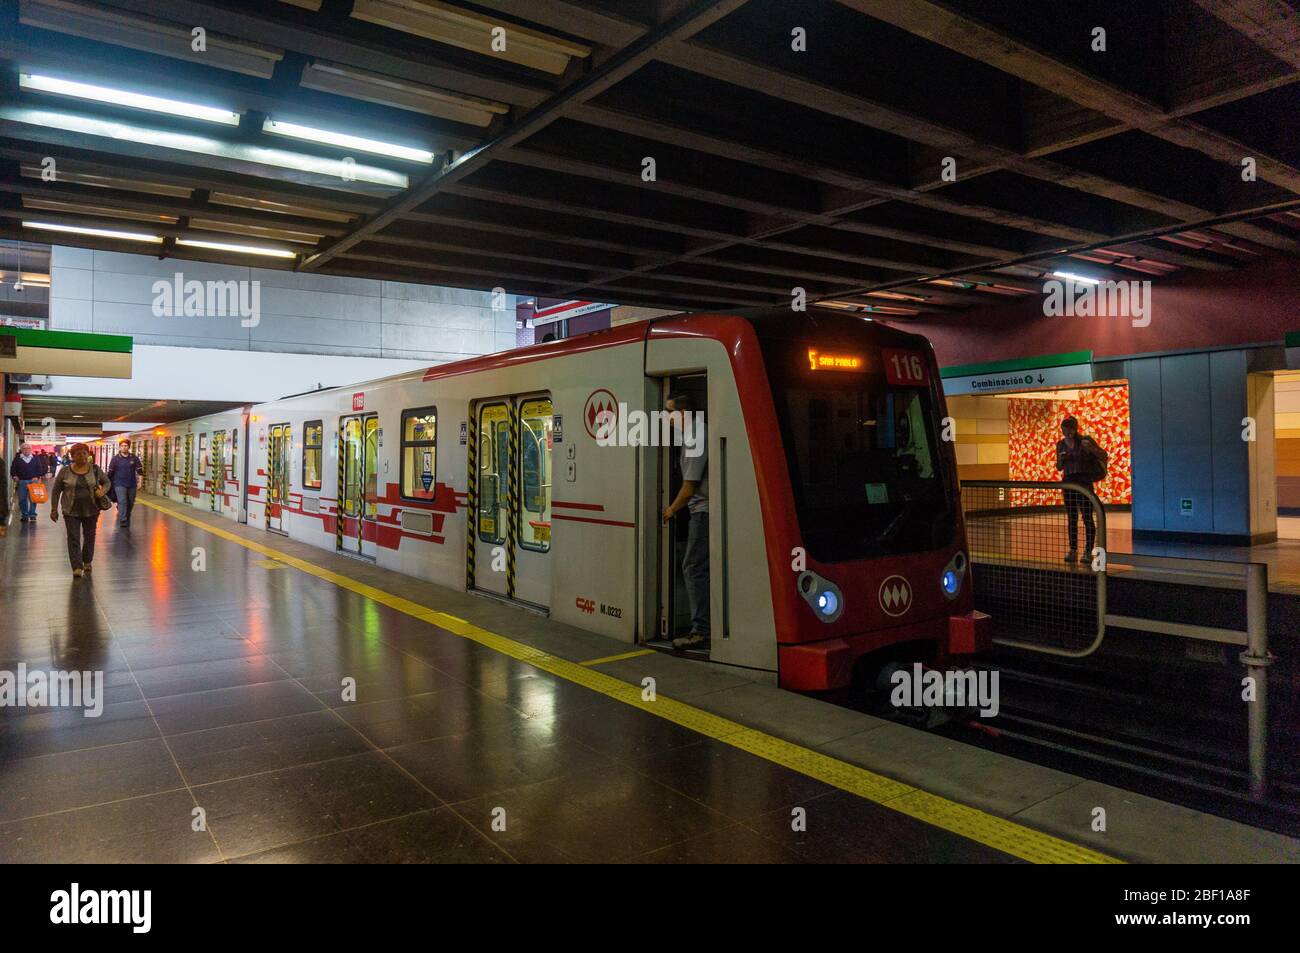 SANTIAGO, CHILE - APRIL 2017: A Metro de Santiago train at San Pablo station Stock Photo